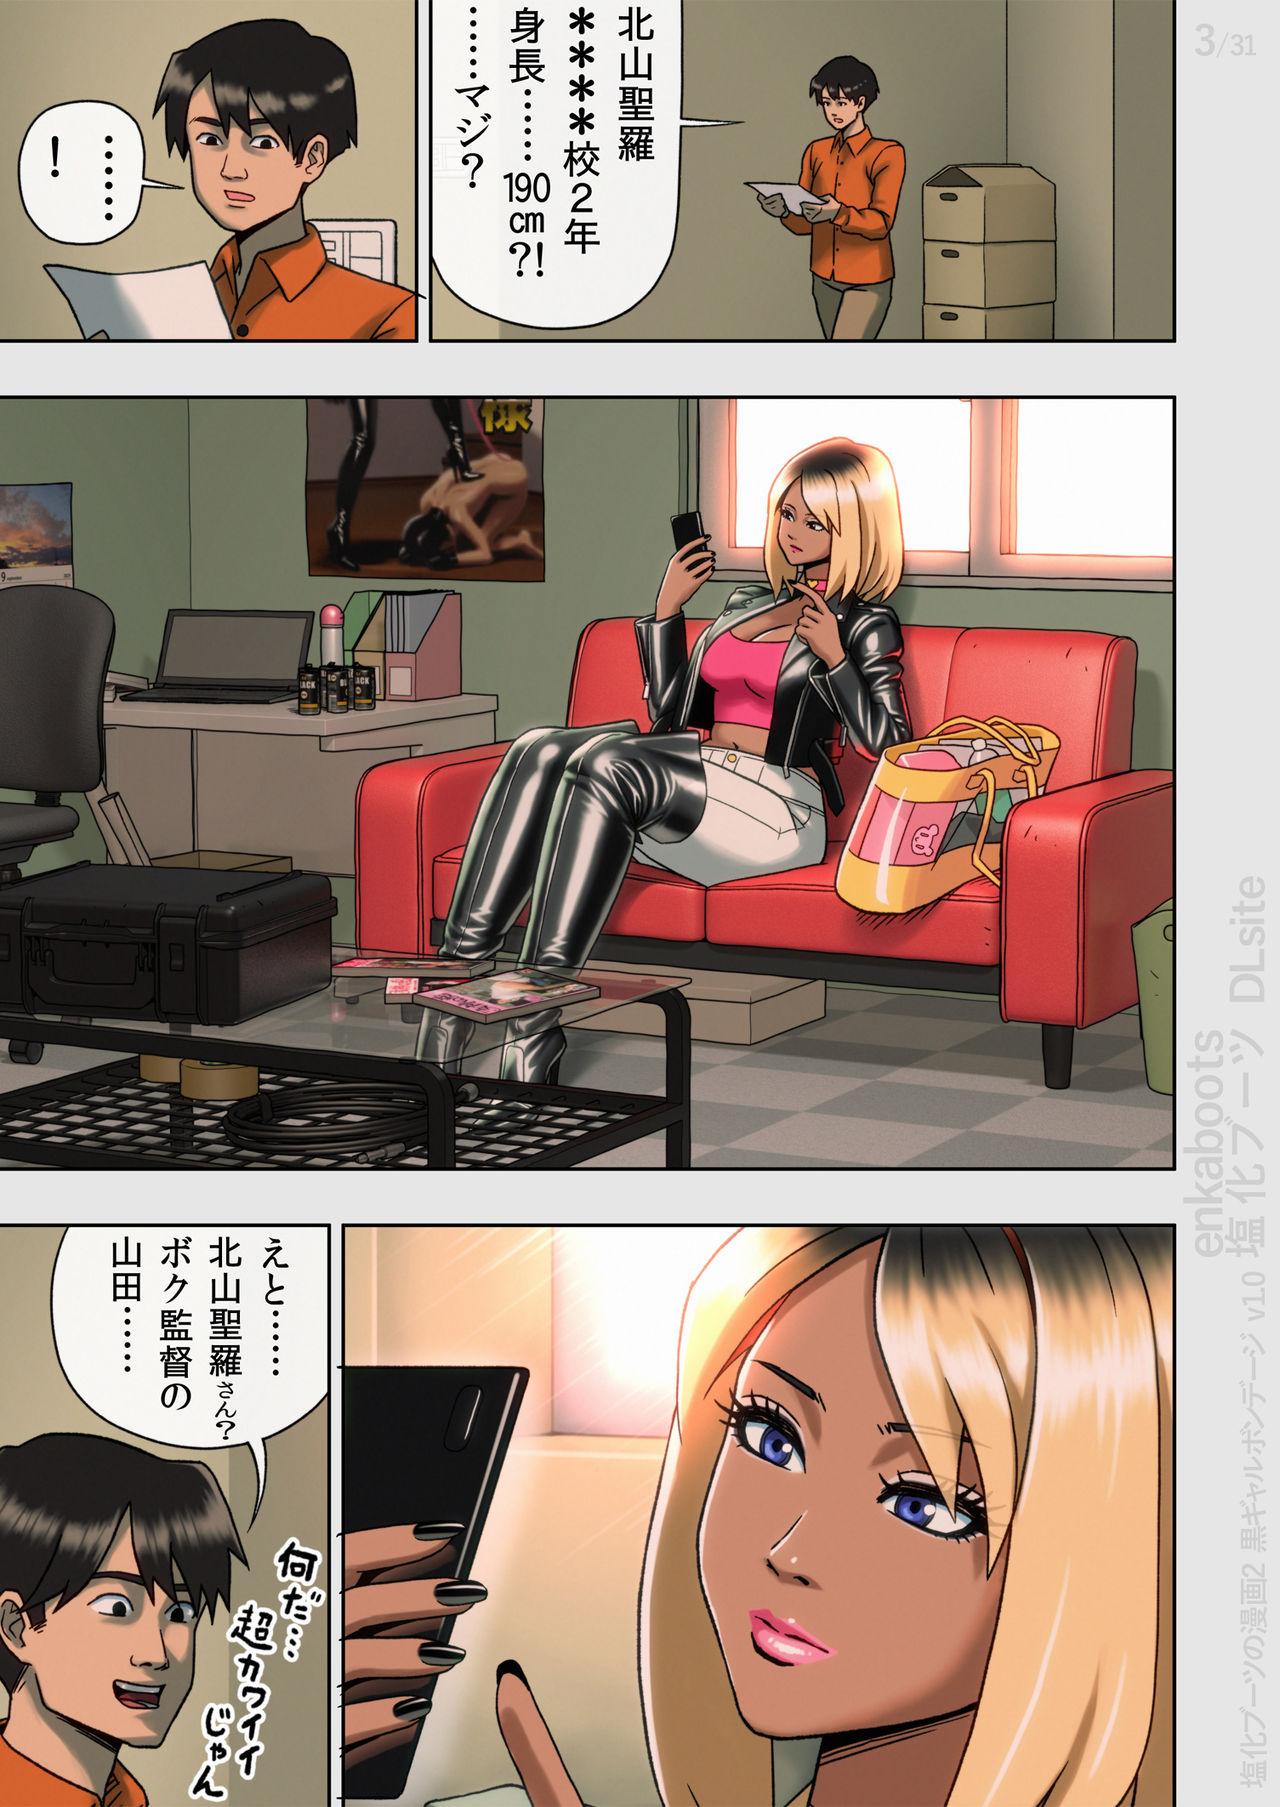 Hd Porn Kuro Gal Bondage: Enka Boots no Manga 2 - Original Comedor - Page 5